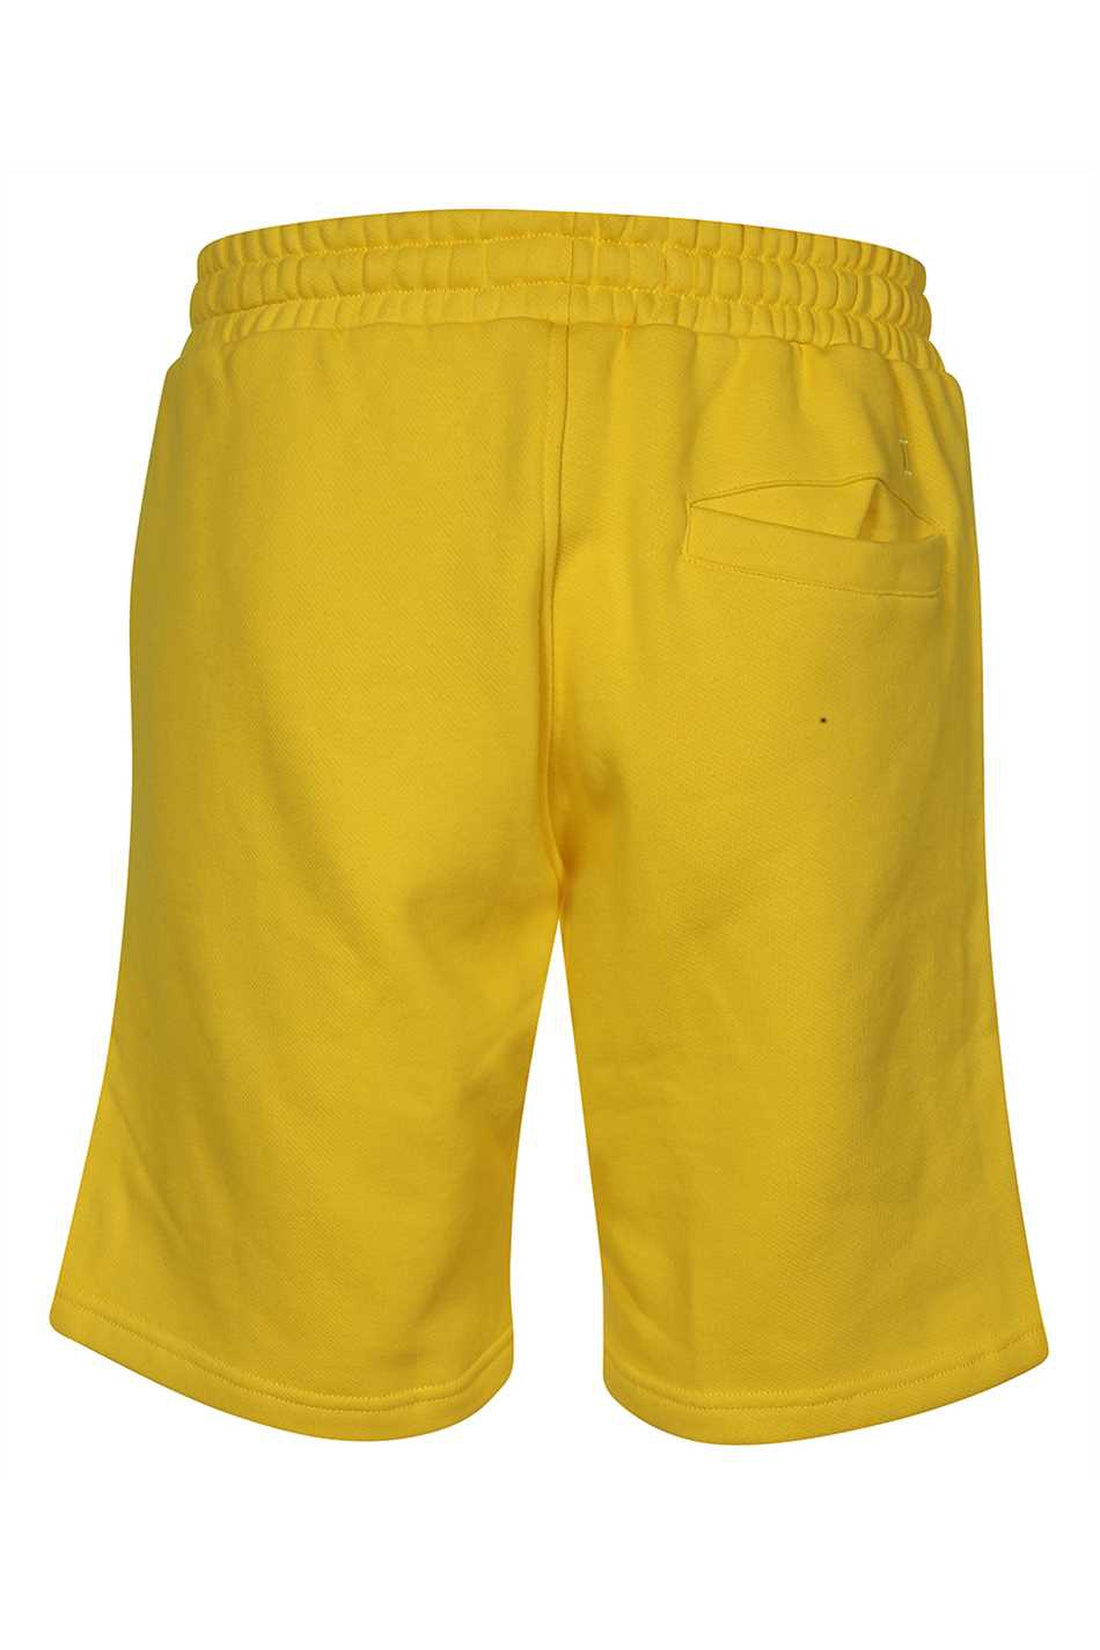 Les Deux-OUTLET-SALE-Cotton bermuda shorts-ARCHIVIST